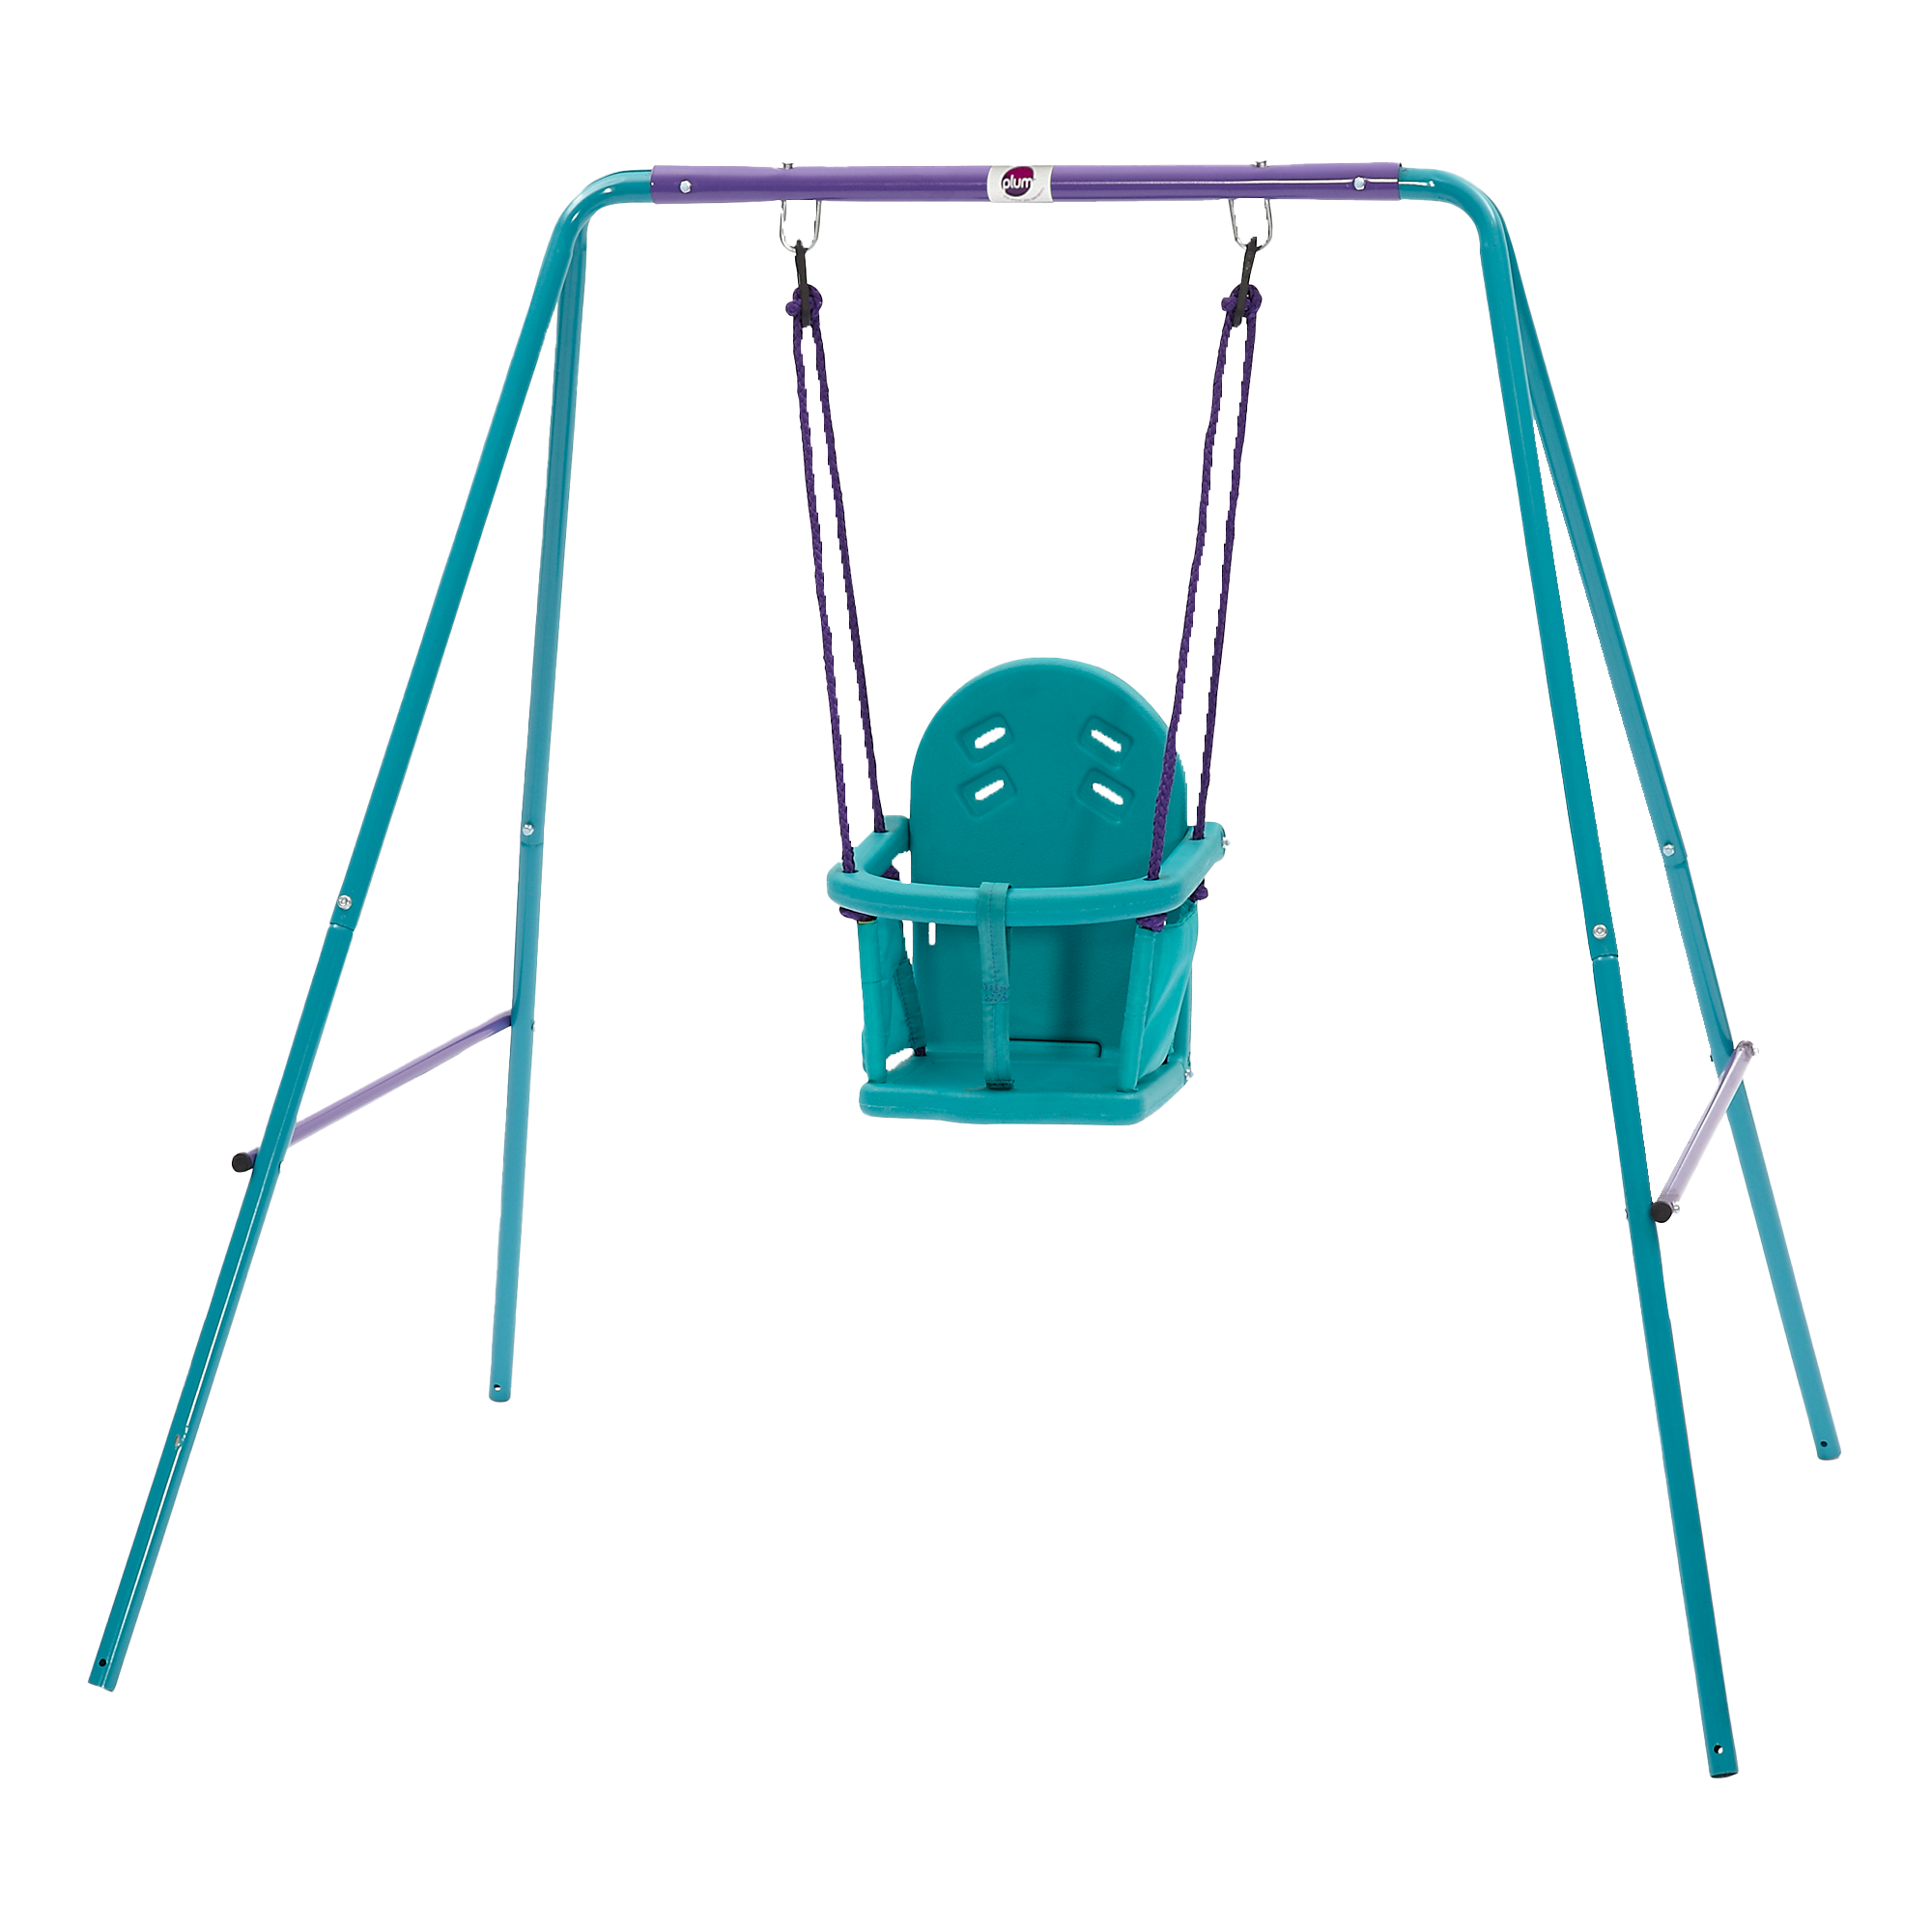 Plum Play 2in1 Baby Swing Set (Purple/Teal)